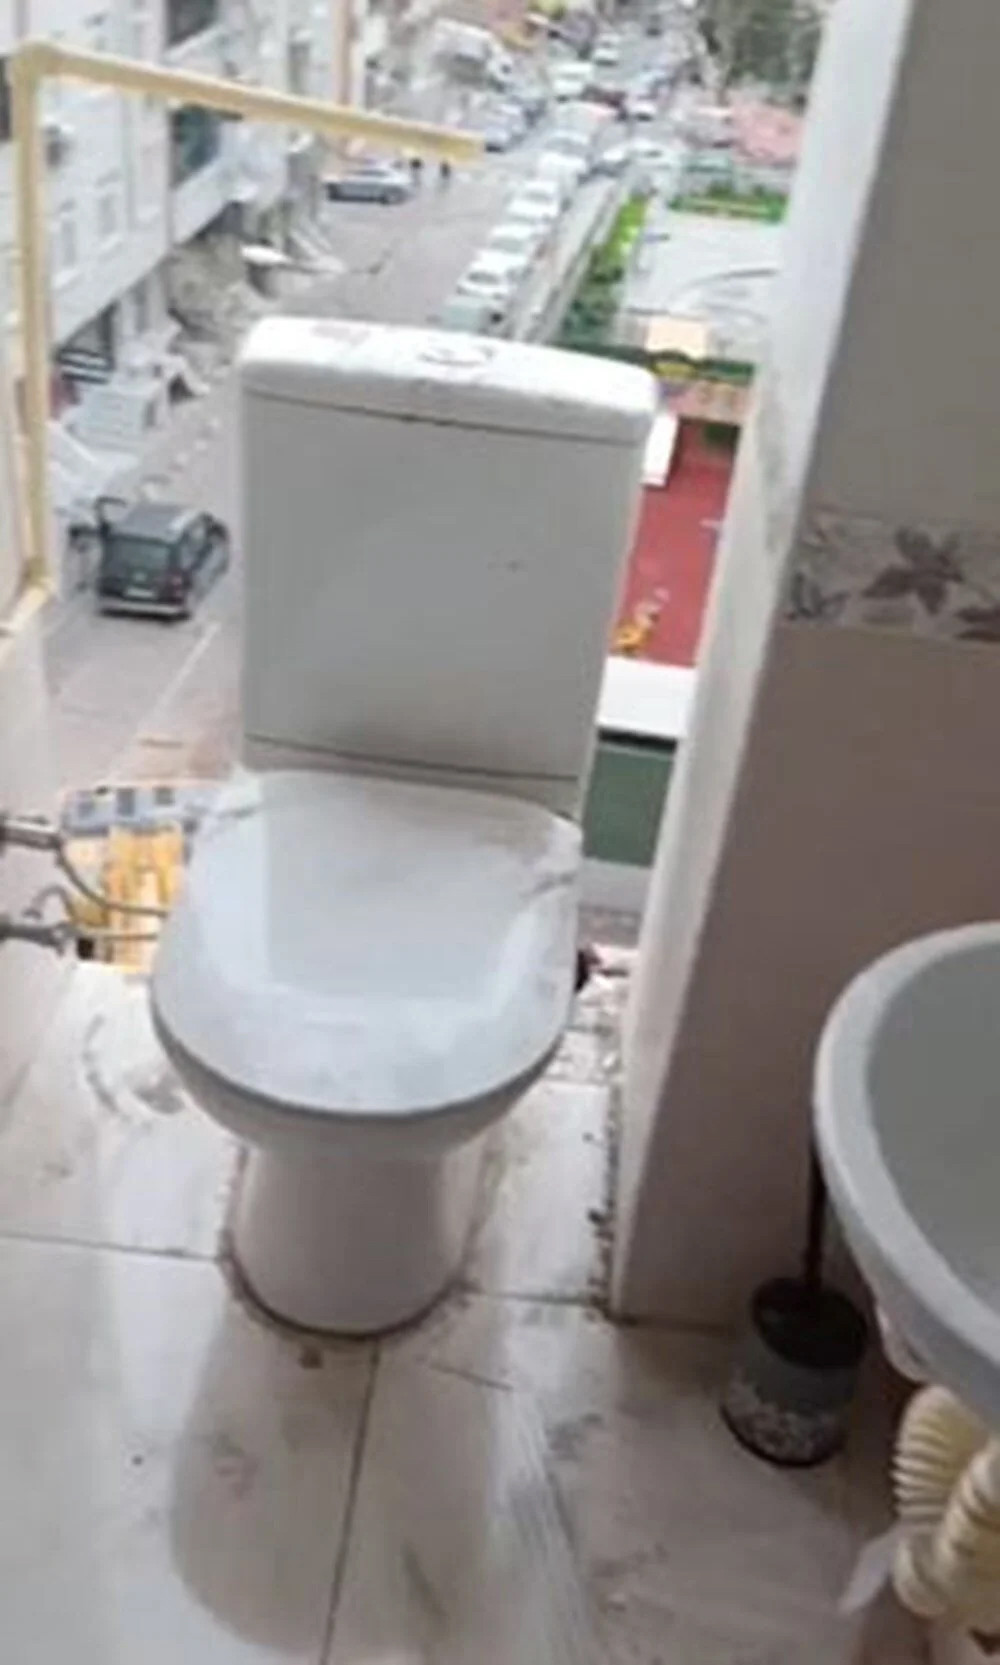 İstanbul'da kentsel dönüşüm: Kepçe yıktı, tuvalet açıkta kaldı!